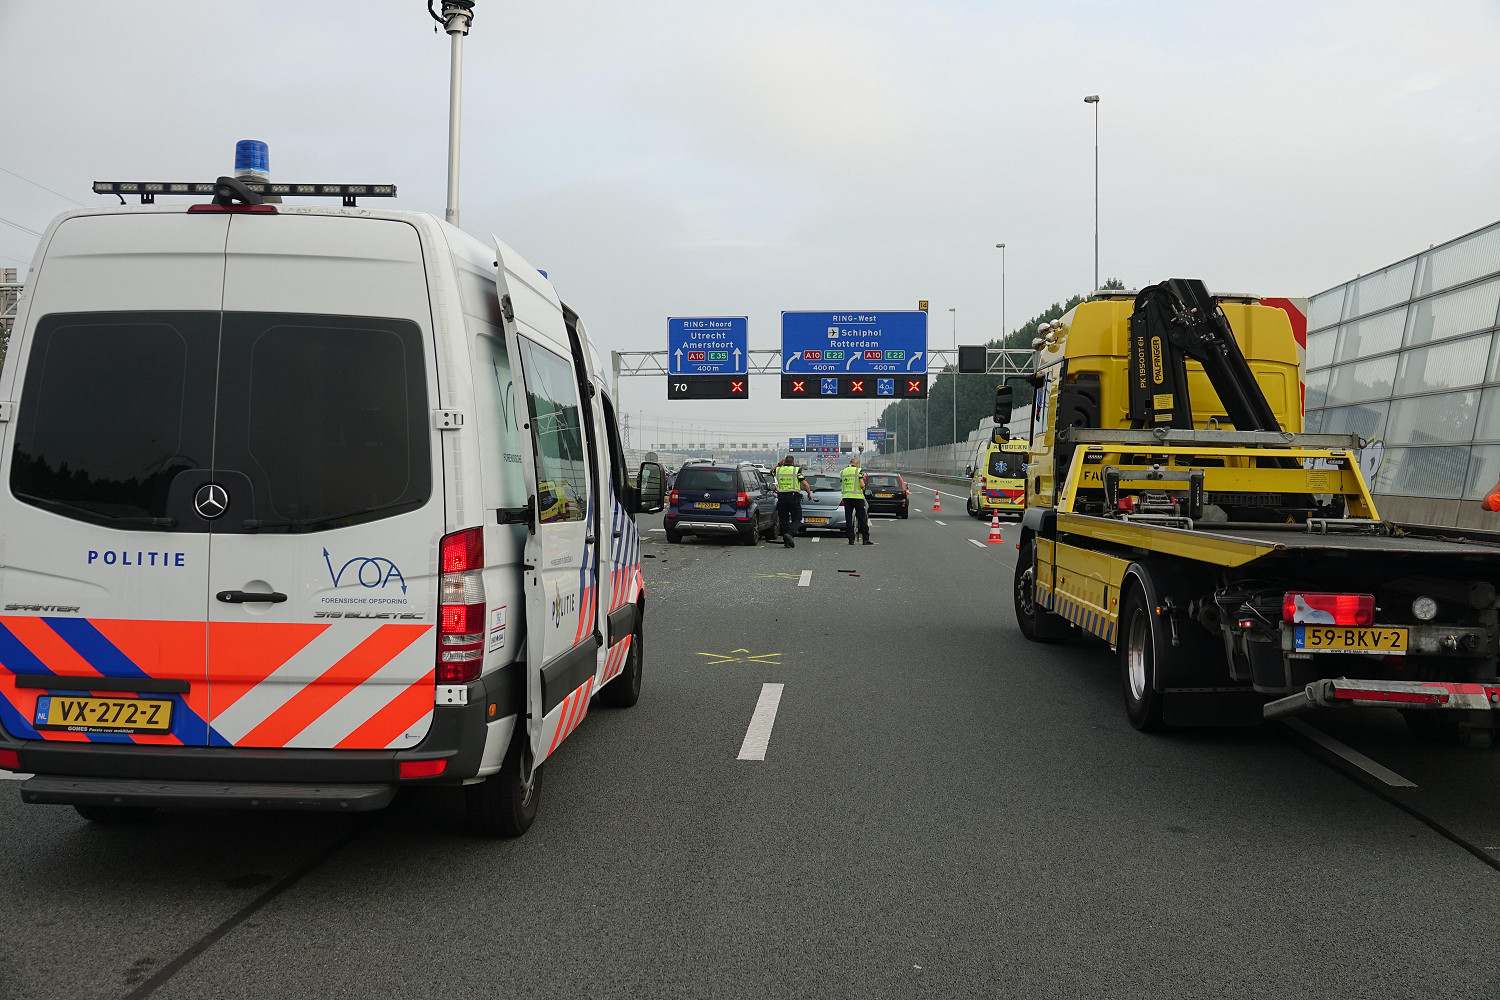 RHoogwout Berging wacht na een ongeval op de A10 op 25 september 2021 op de afronding van het technisch onderzoek van de politie